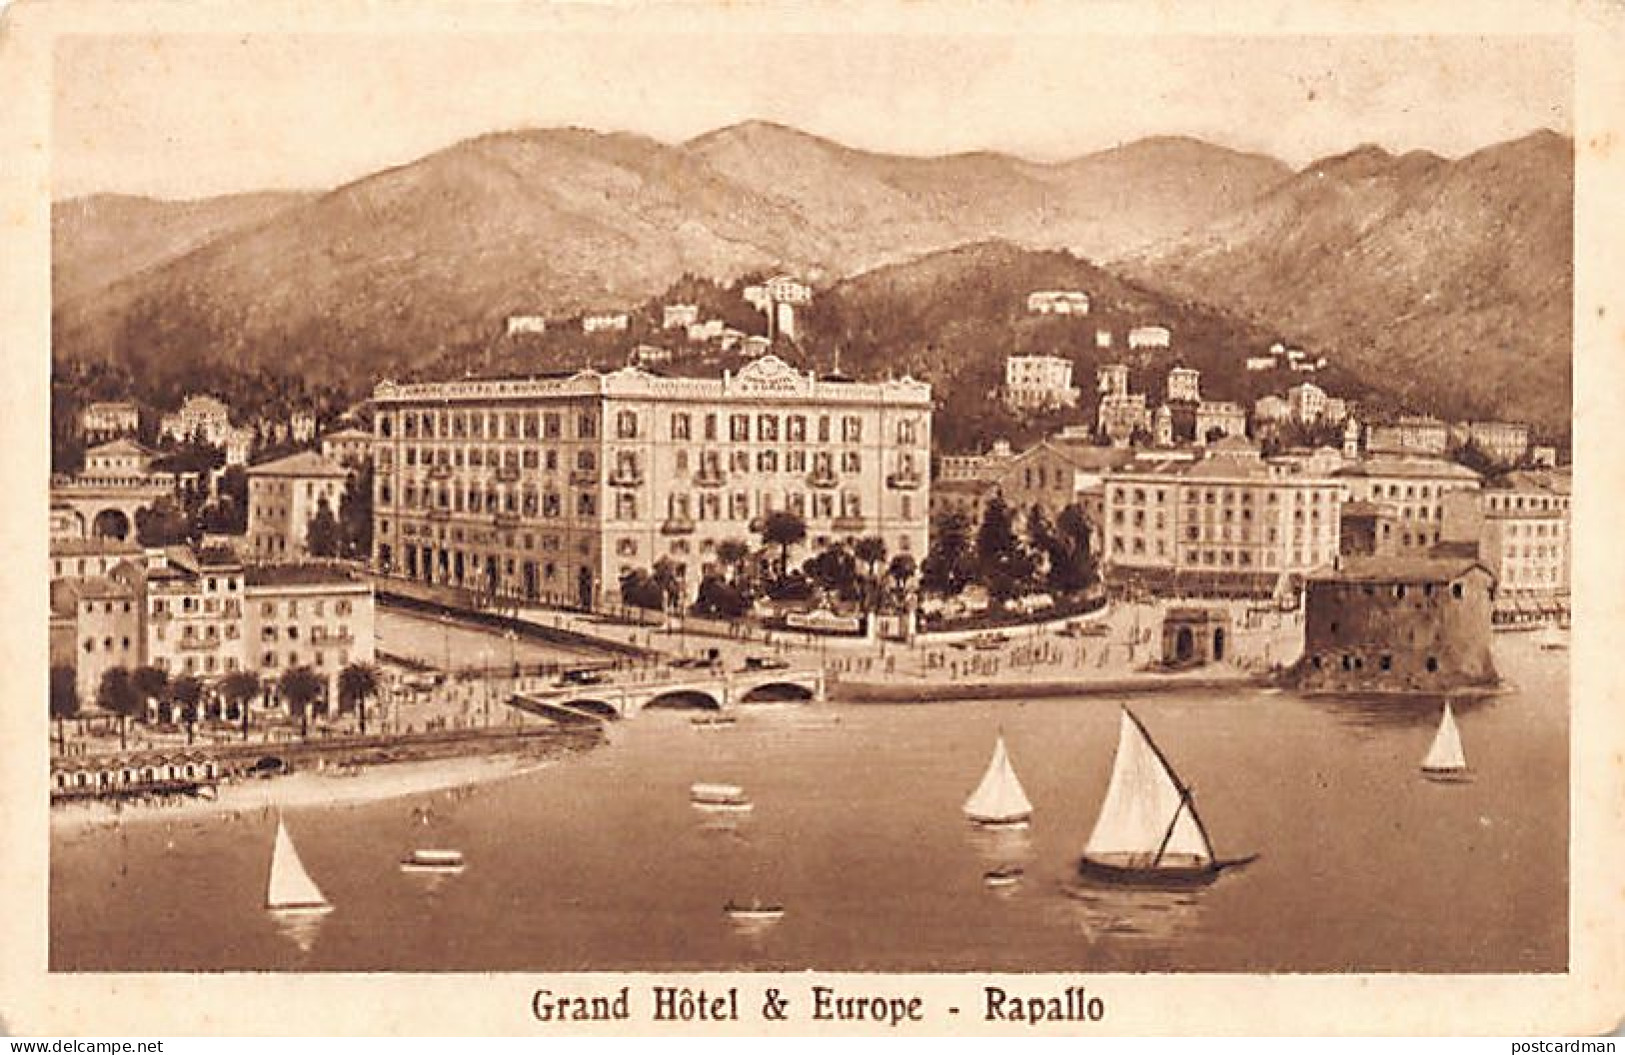  RAPALLO (Genova) Grand Hôtel & Europe - Genova (Genua)